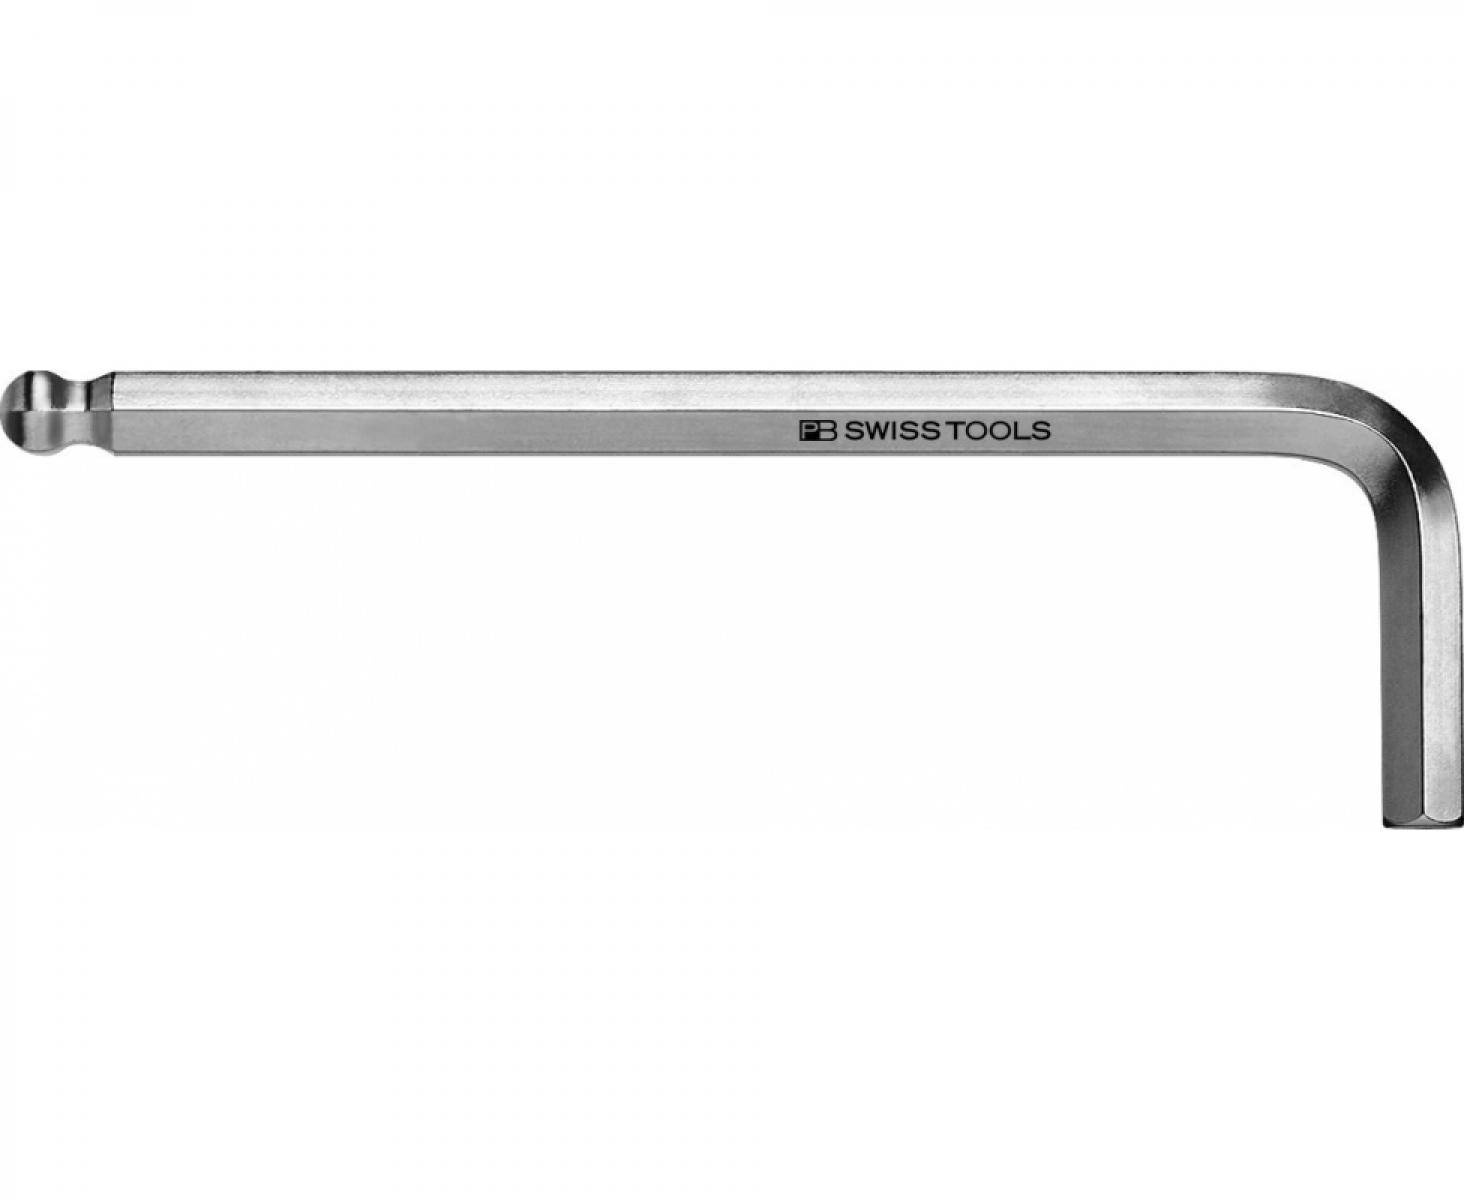 Ключ штифтовый HEX PB Swiss Tools PB 212Z.5/32 со сферической головкой дюймовый